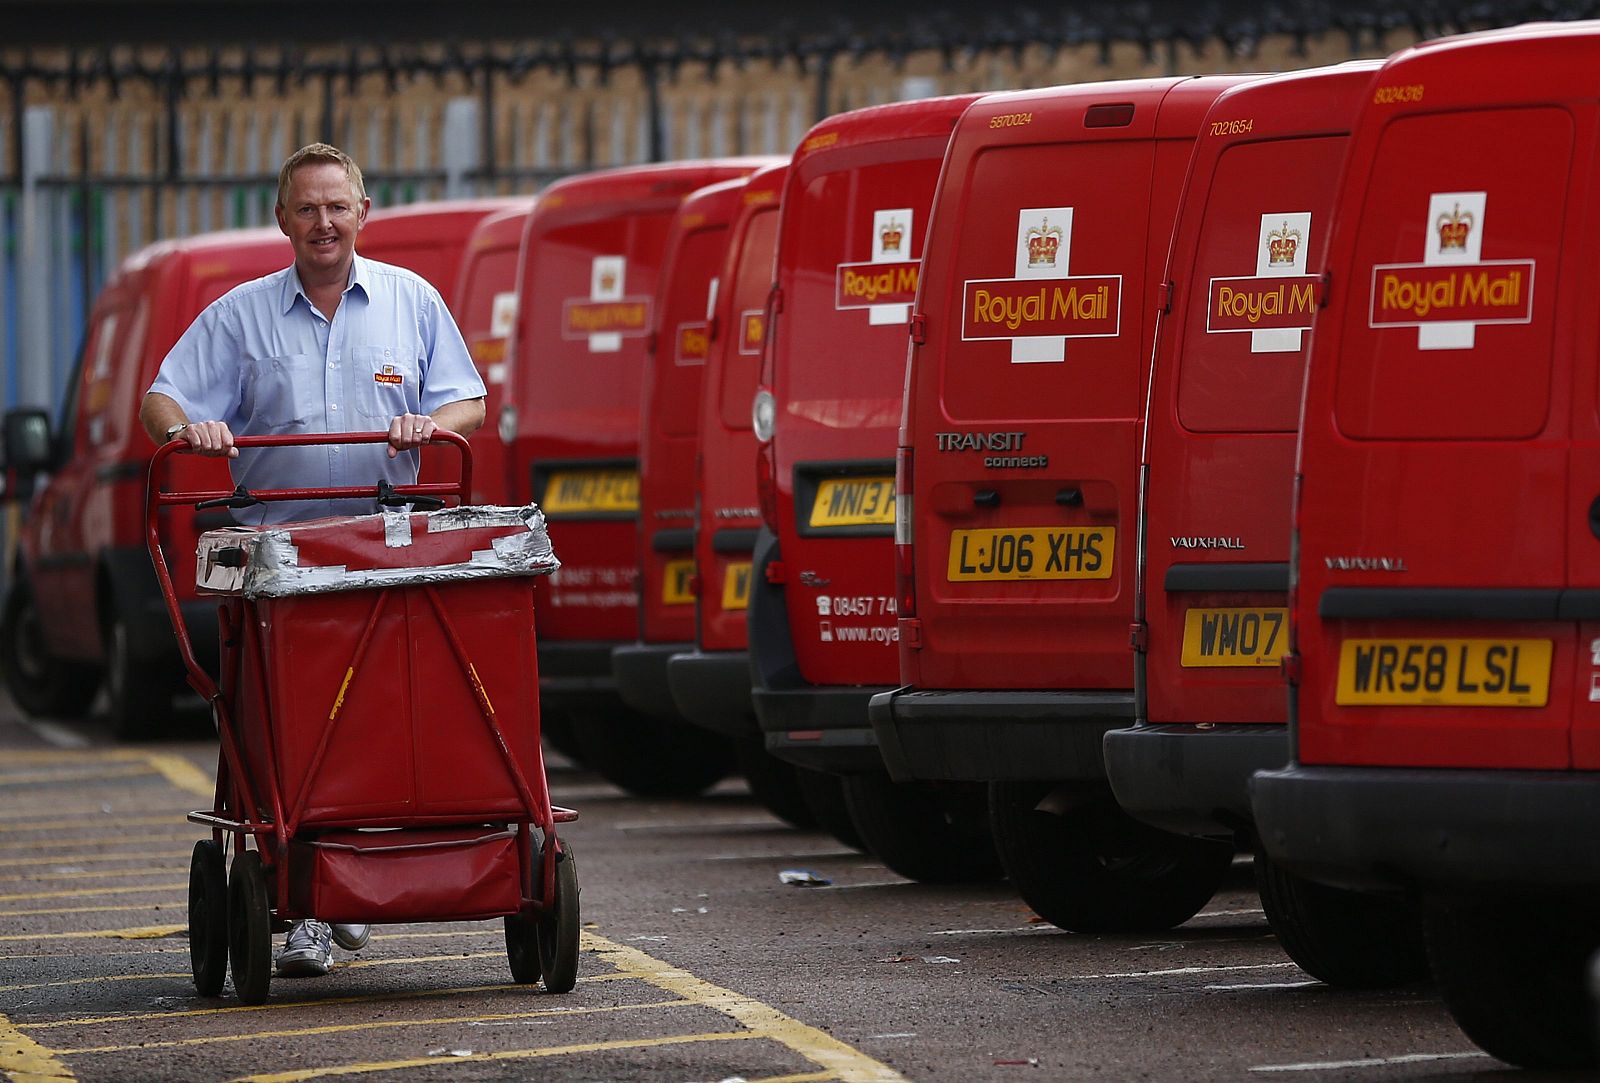 Un cartero empuja un carro con correo de Royal Mail